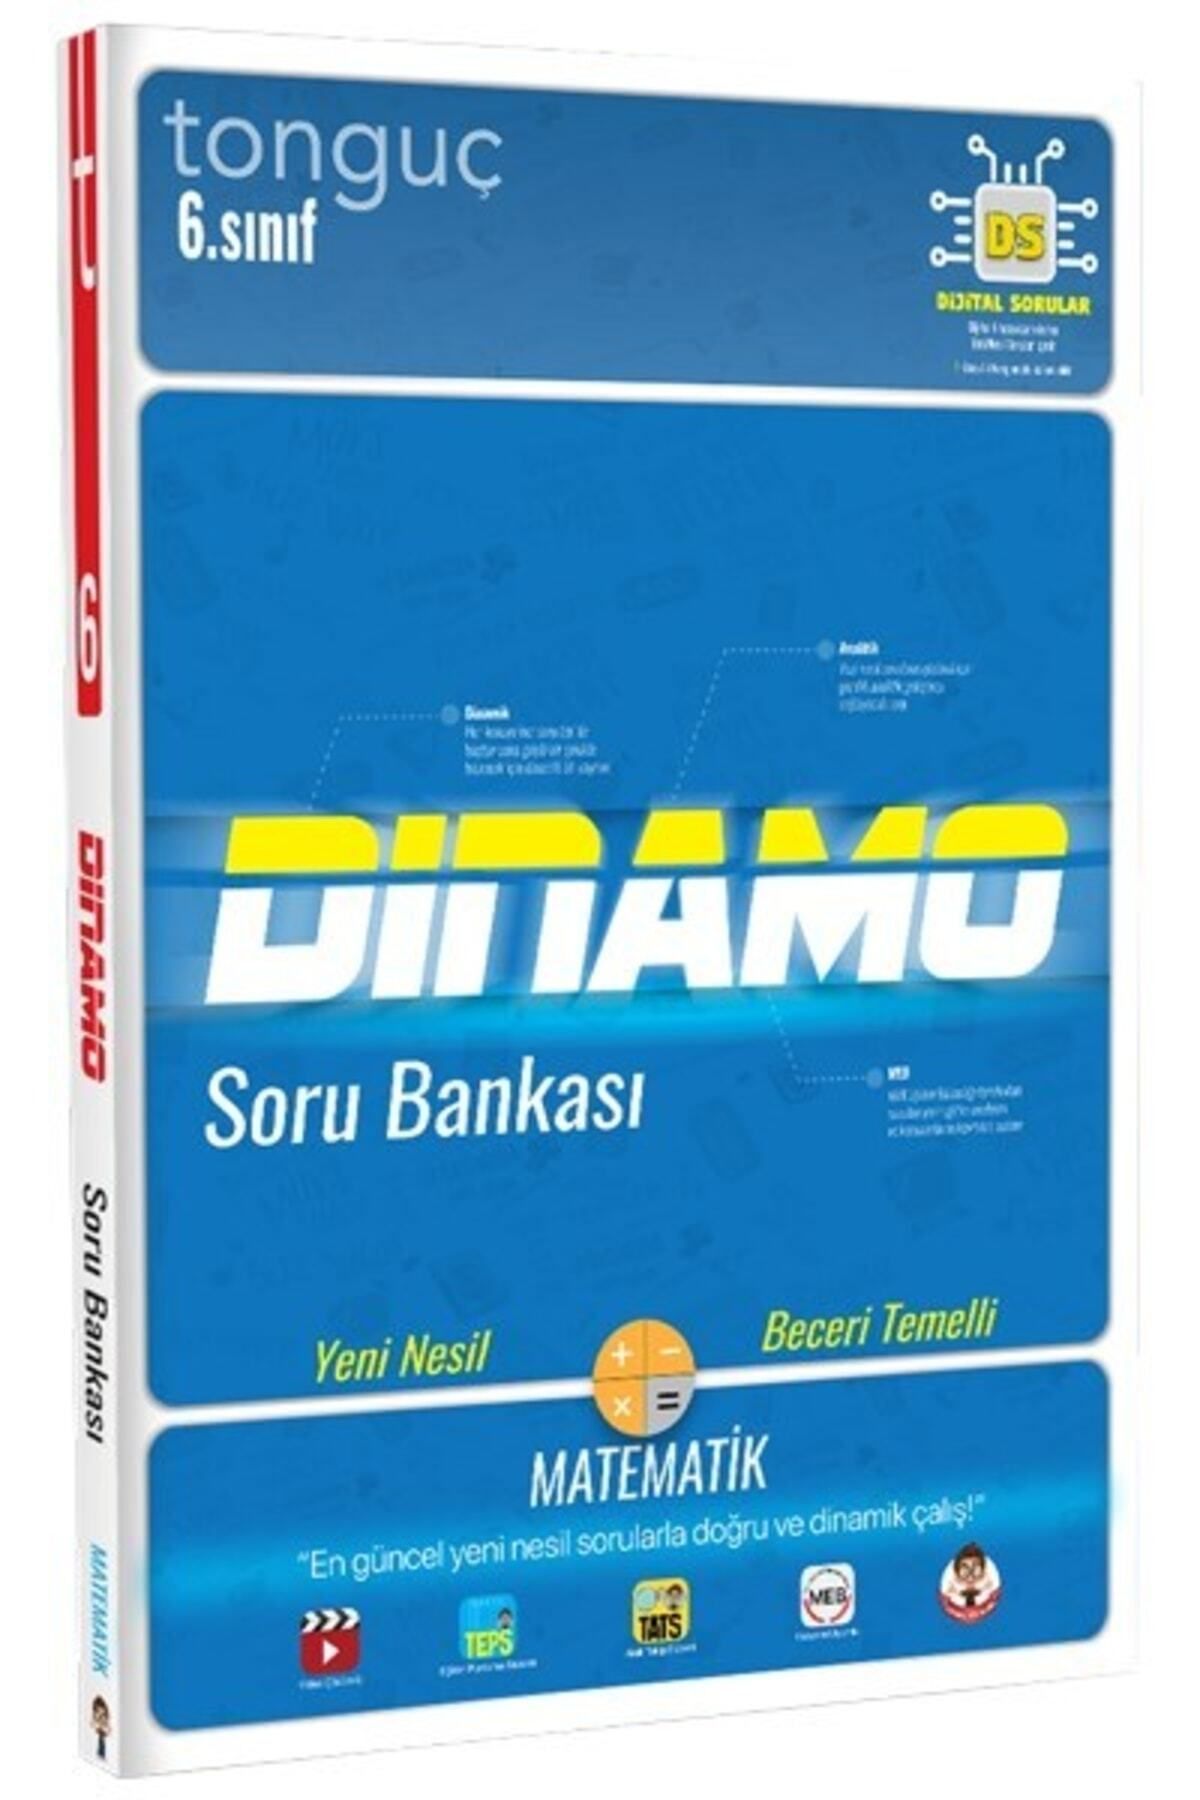 Tonguç Yayınları Tonguç 6.sınıf Dinamo Matematik Soru Bankası (2020)